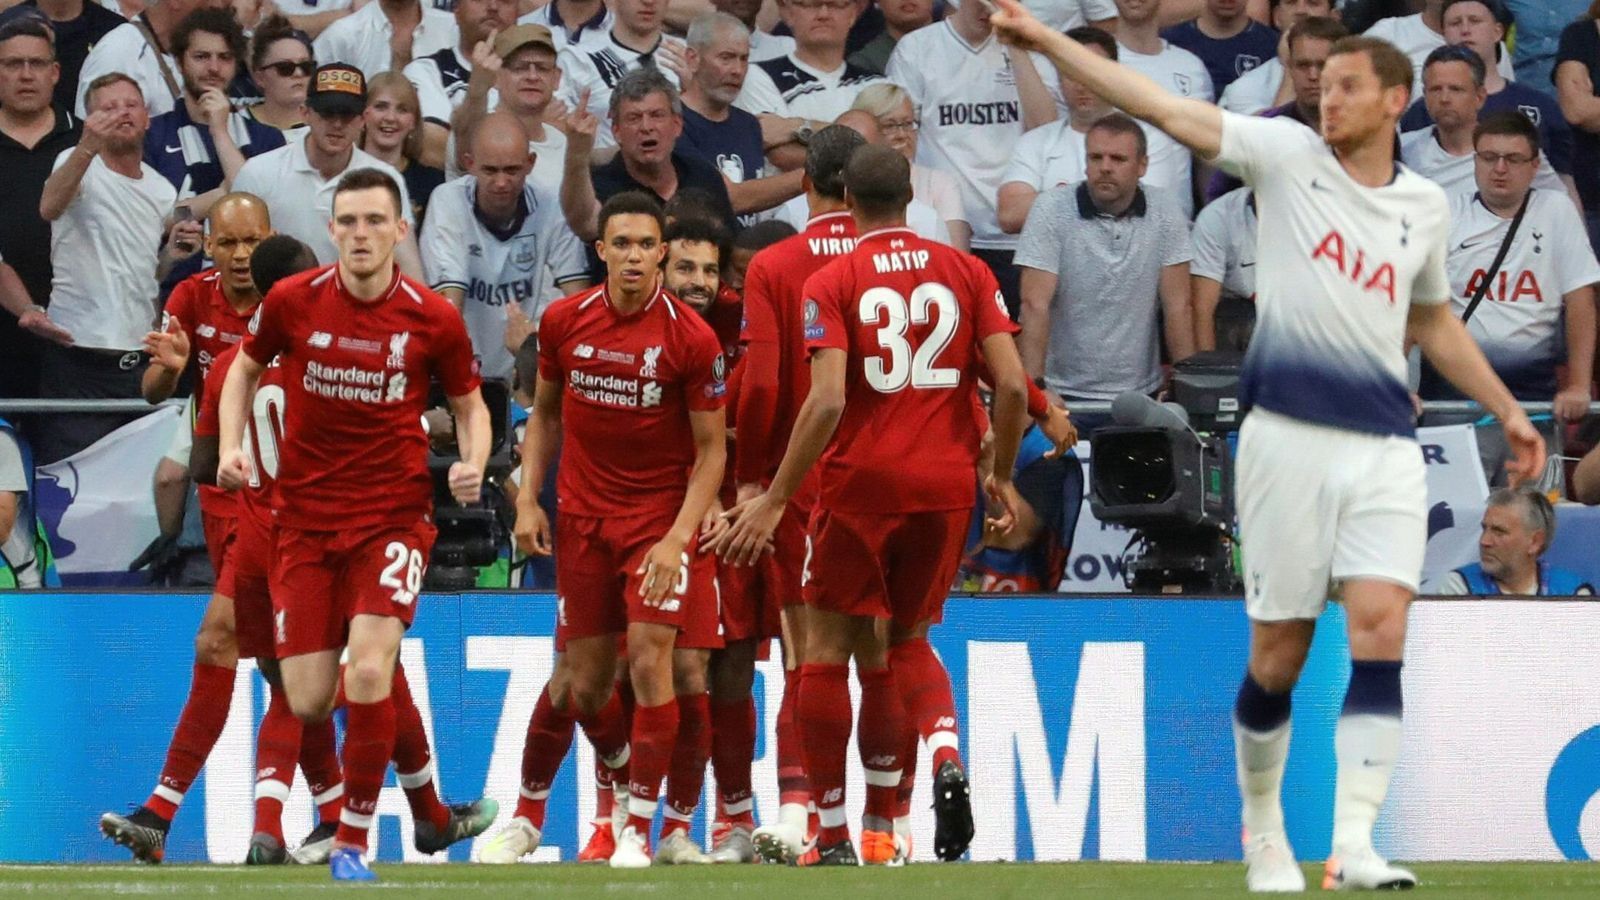 
                <strong>Liverpool schlägt schwache Spurs: Die Einzelkritik zum Champions-League-Finale</strong><br>
                Die "Reds" machens! Liverpool stößt Real Madrid nach 1099 Tagen vom europäischen Thron. ran.de präsentiert die Einzelkritik zum Finale Tottenham gegen Liverpool.
              